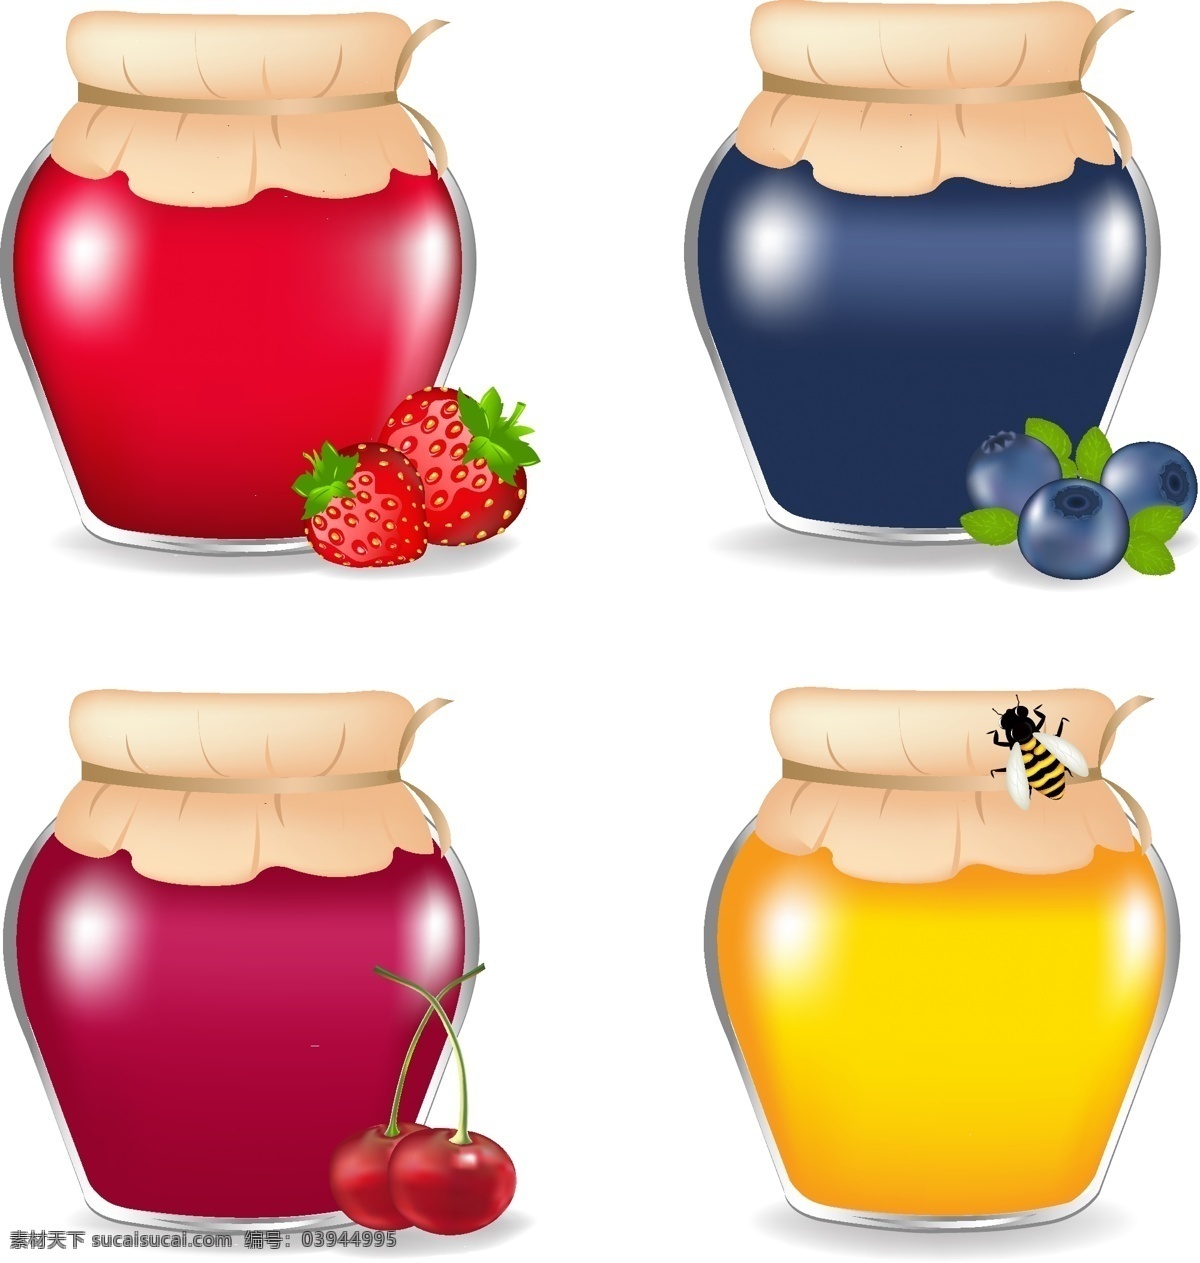 精美 果酱 蜂蜜 矢量 草莓 罐子 蓝莓 蜜蜂 瓶子 食品 矢量素材 樱桃 调味用品 矢量图 日常生活